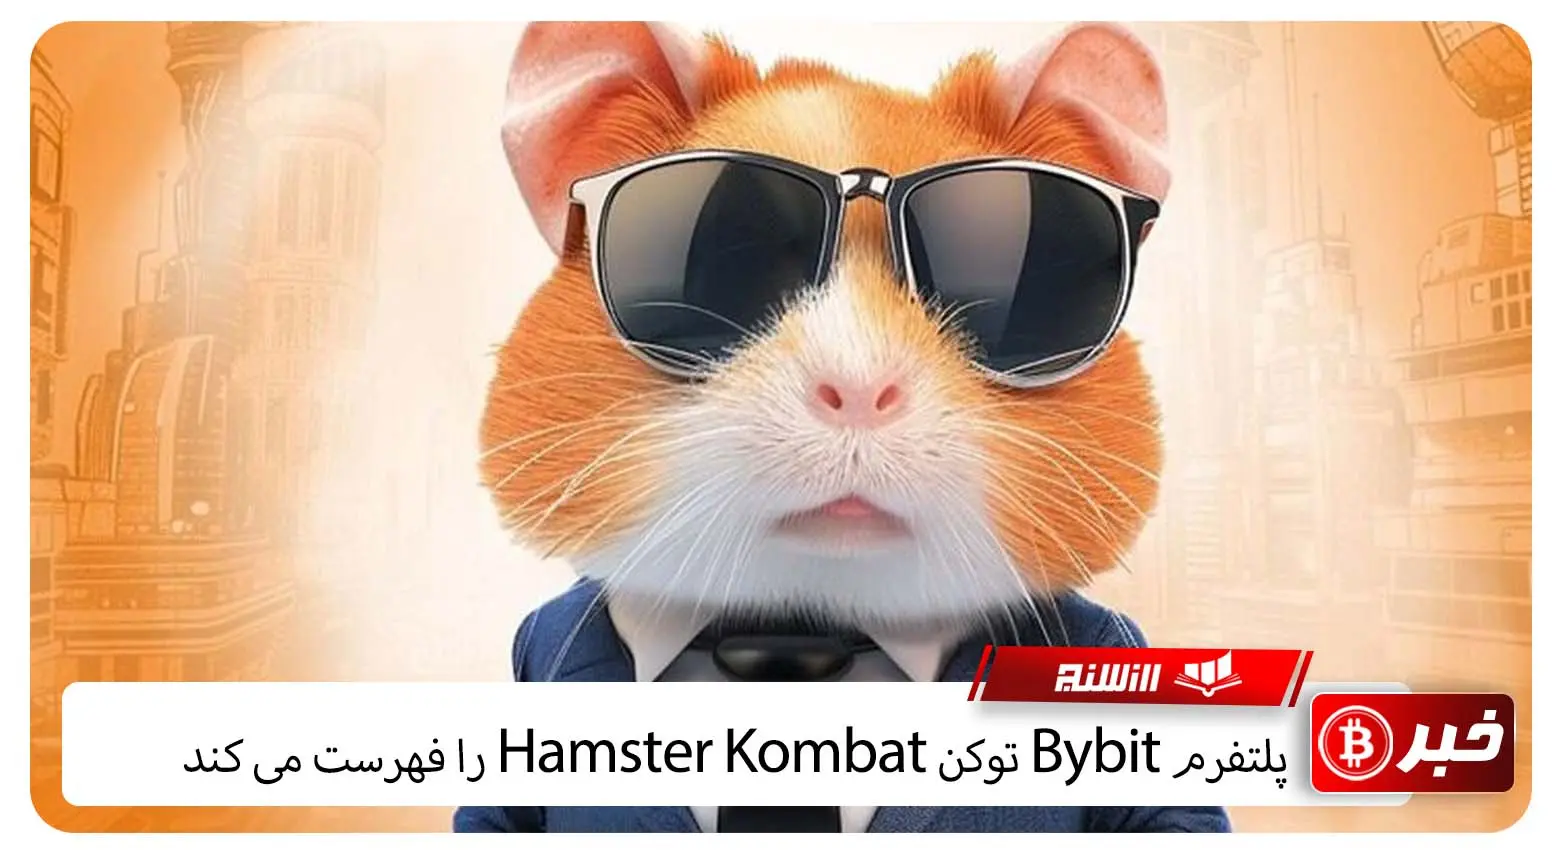 پلتفرم Bybit توکن Hamster Kombat را فهرست می کند